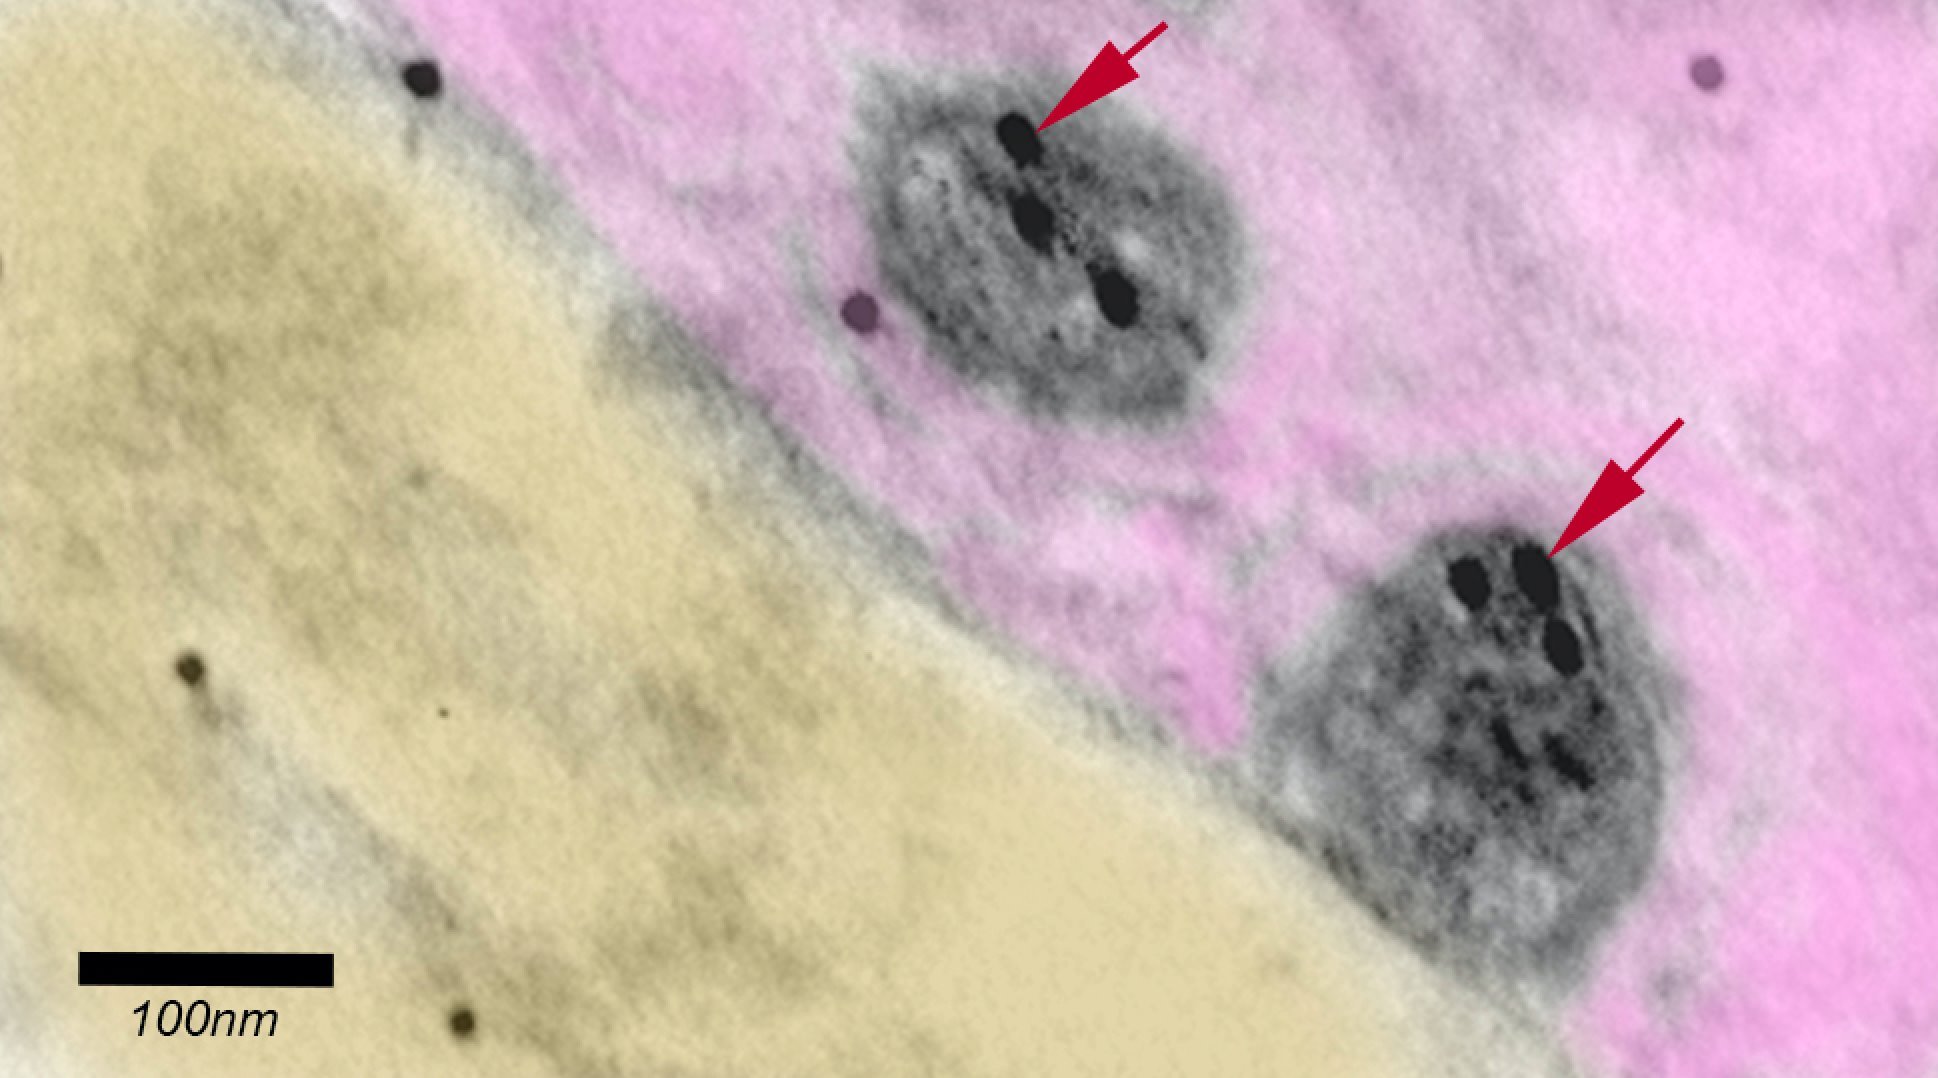 Imagem de microscopia eletrônica colorida artificialmente mostrando dois vírus Sars-Cov-2